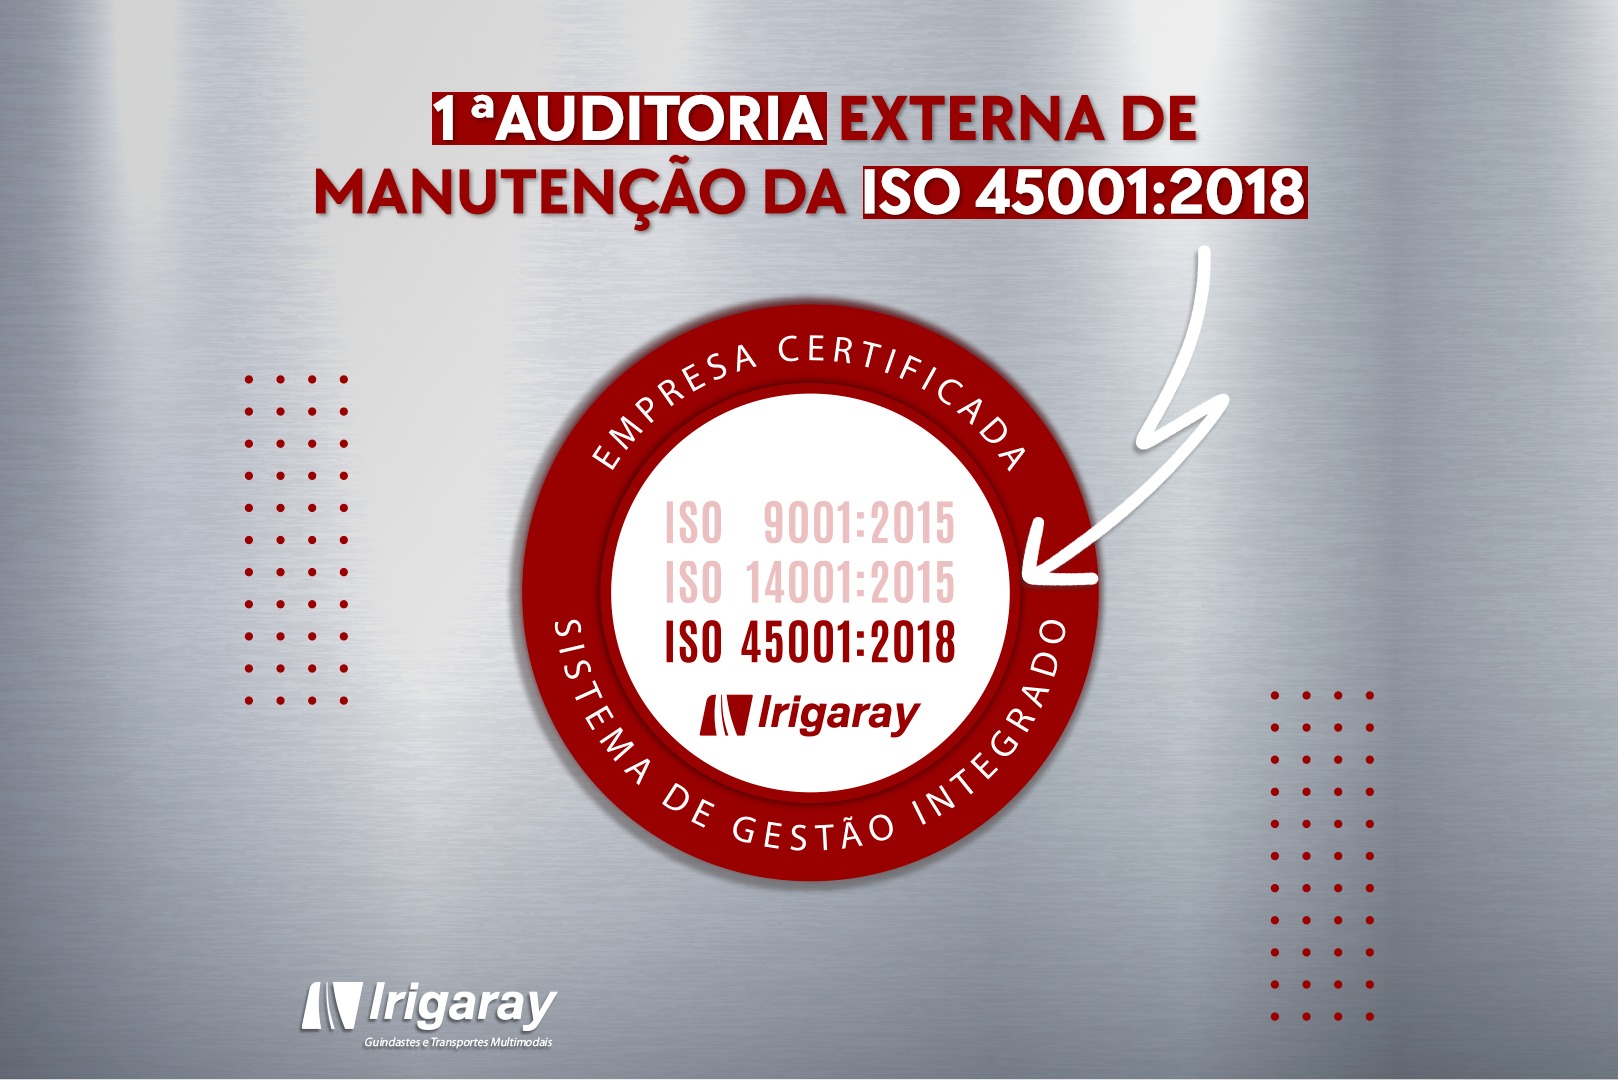 1ª AUDITORIA EXTERNA DE MANUTENÇÃO DA ISO 45001:2018